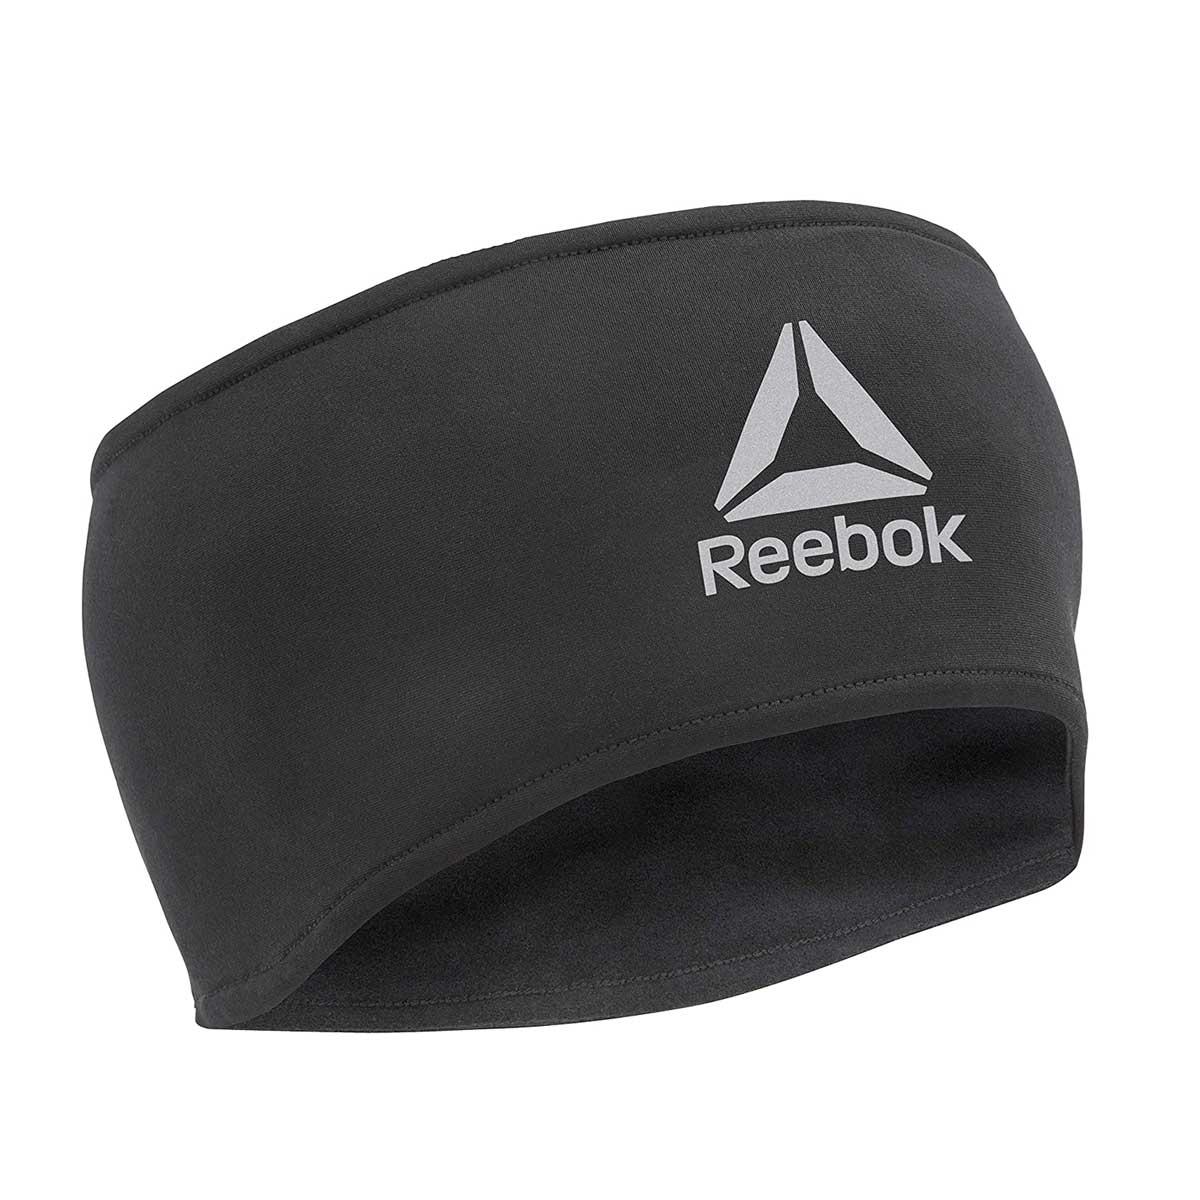 Buy Reebok Running Headband (Black) Online India